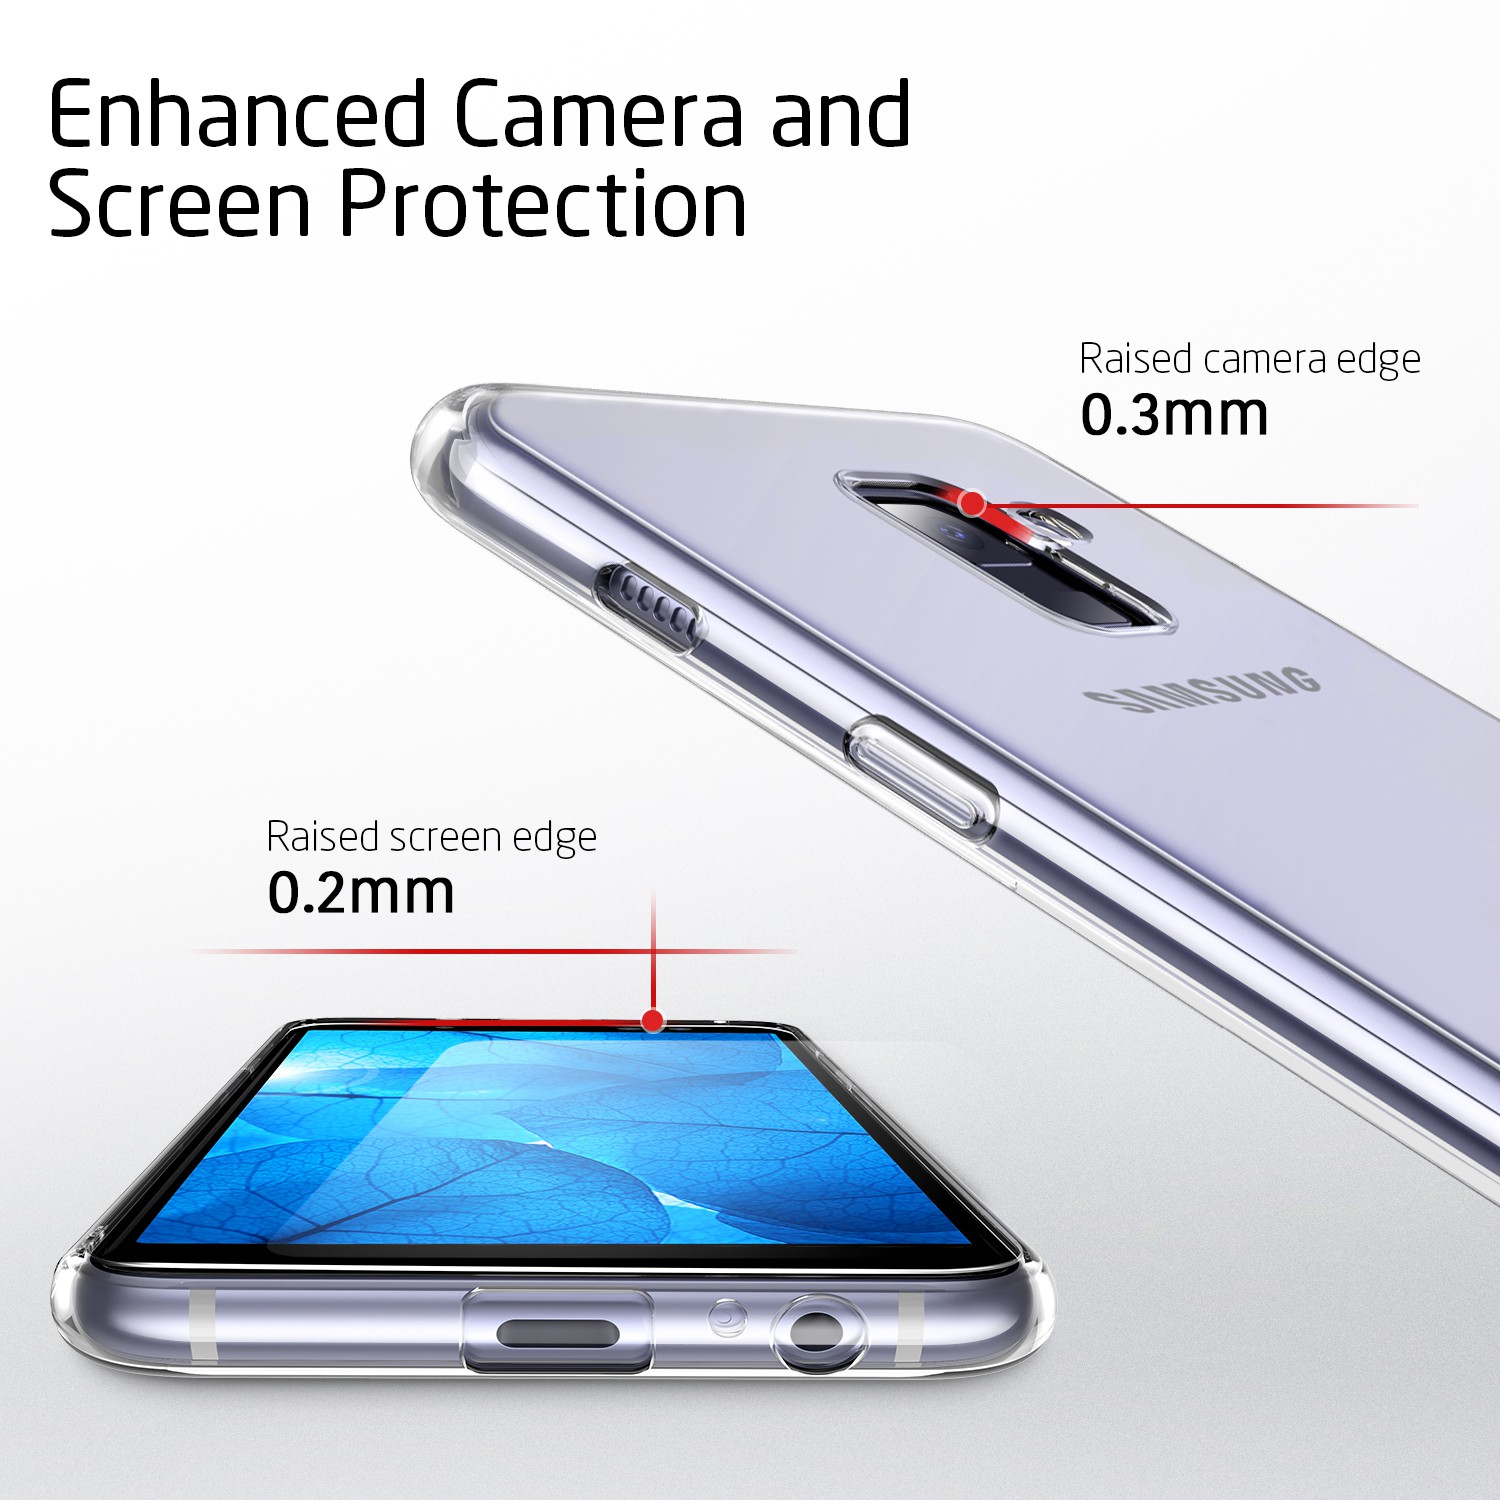 قاب ژله ای شفاف گوشی USAMS transparent case | Galaxy A8 2018